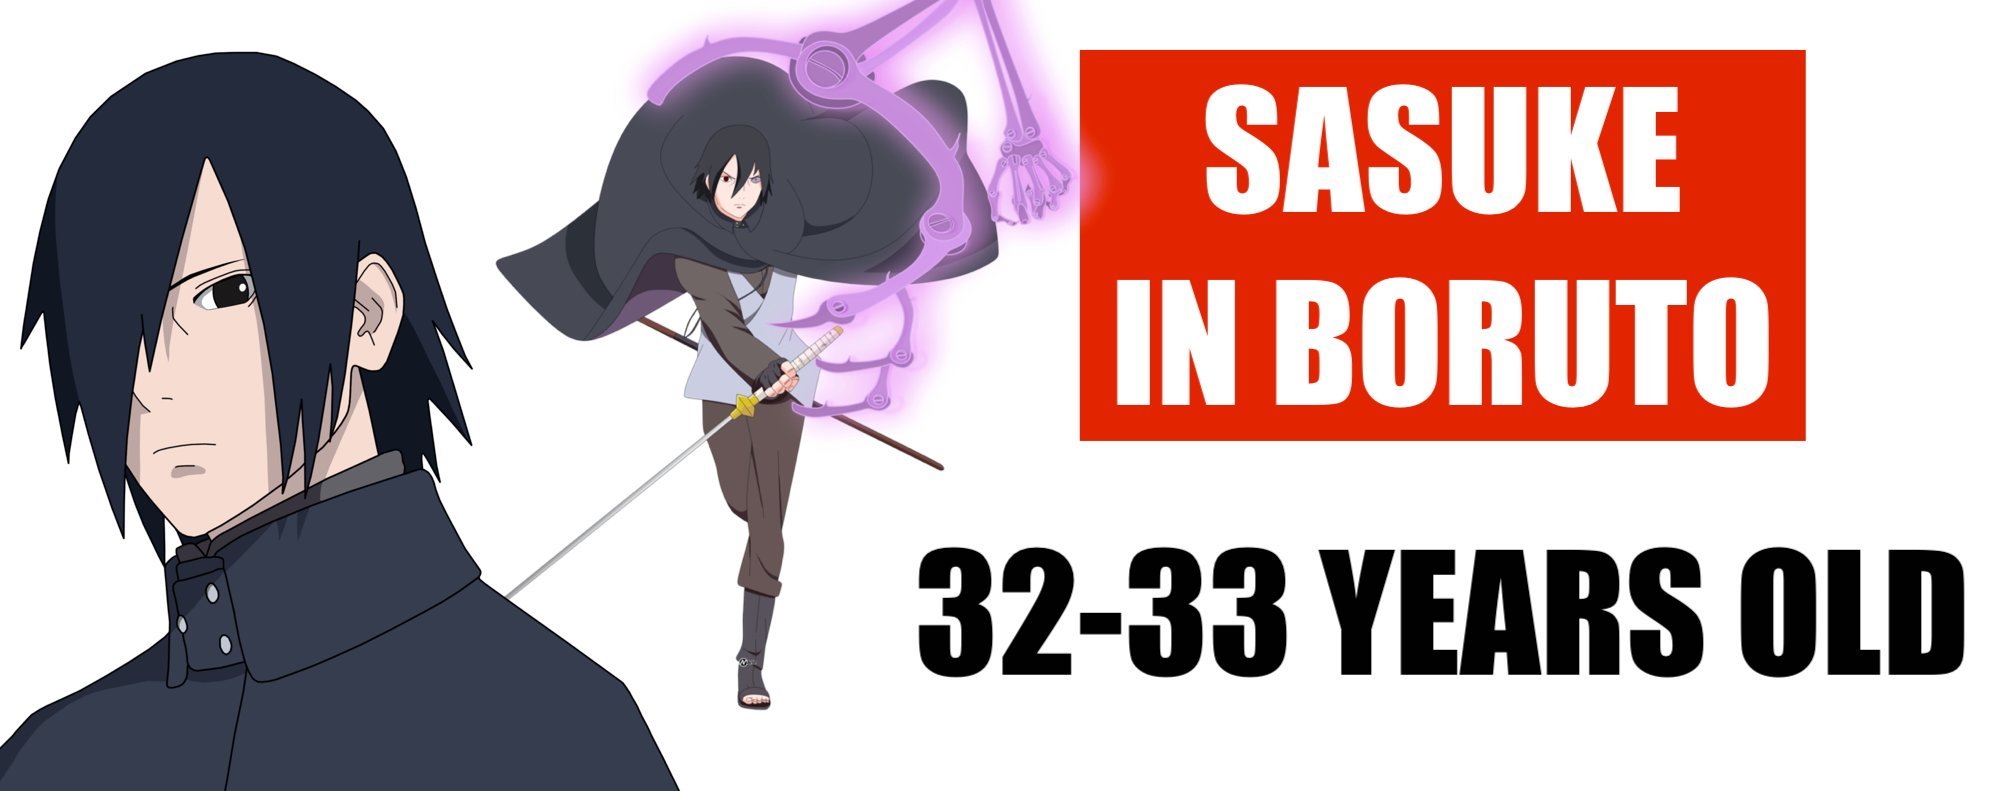 how old is sasuke in boruto